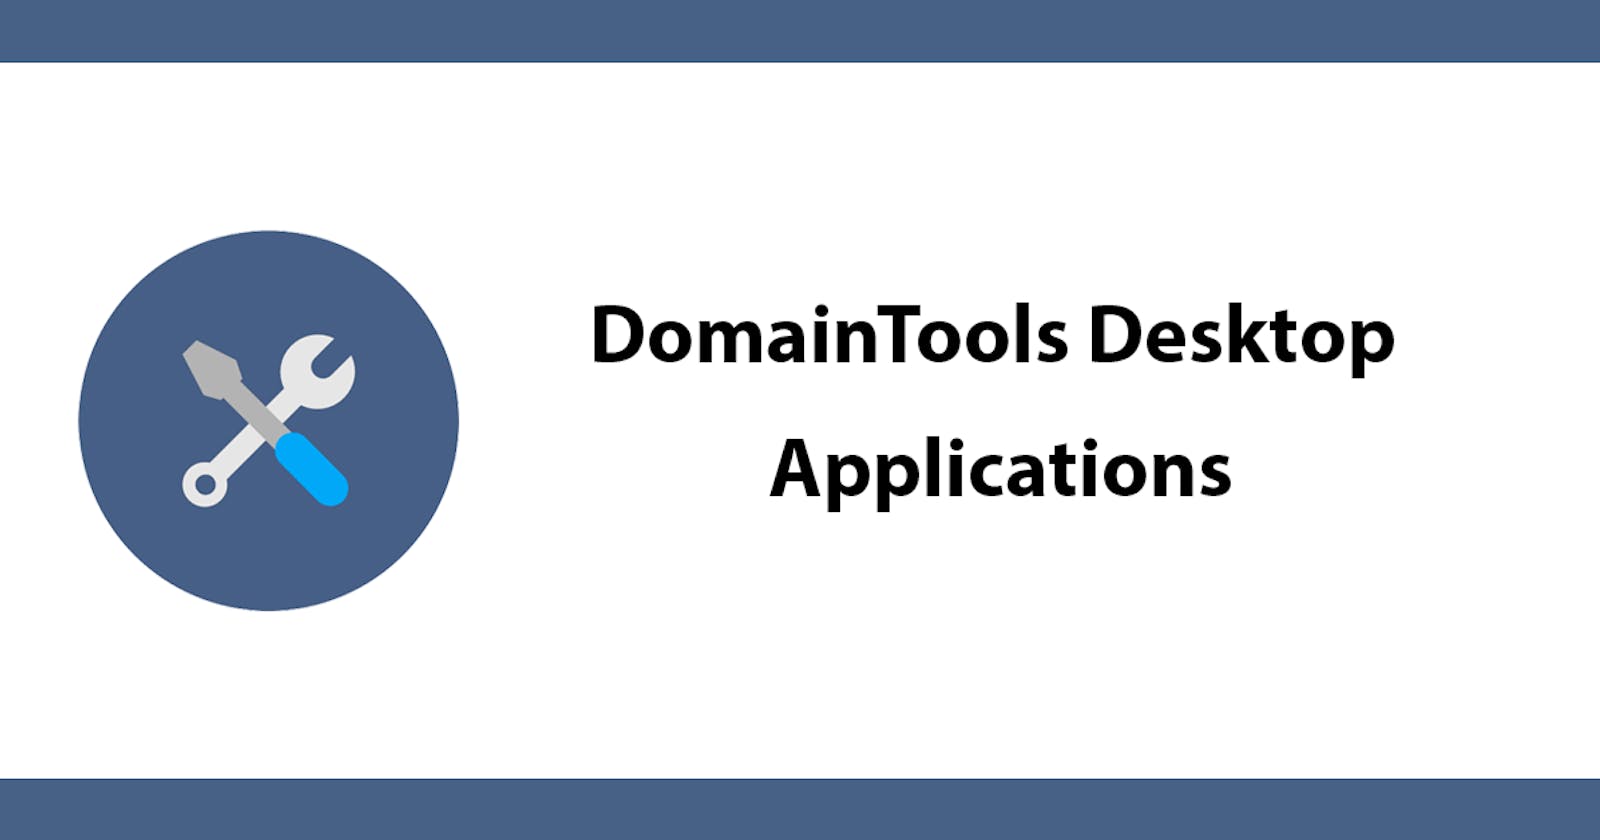 DomainTools Desktop Applications